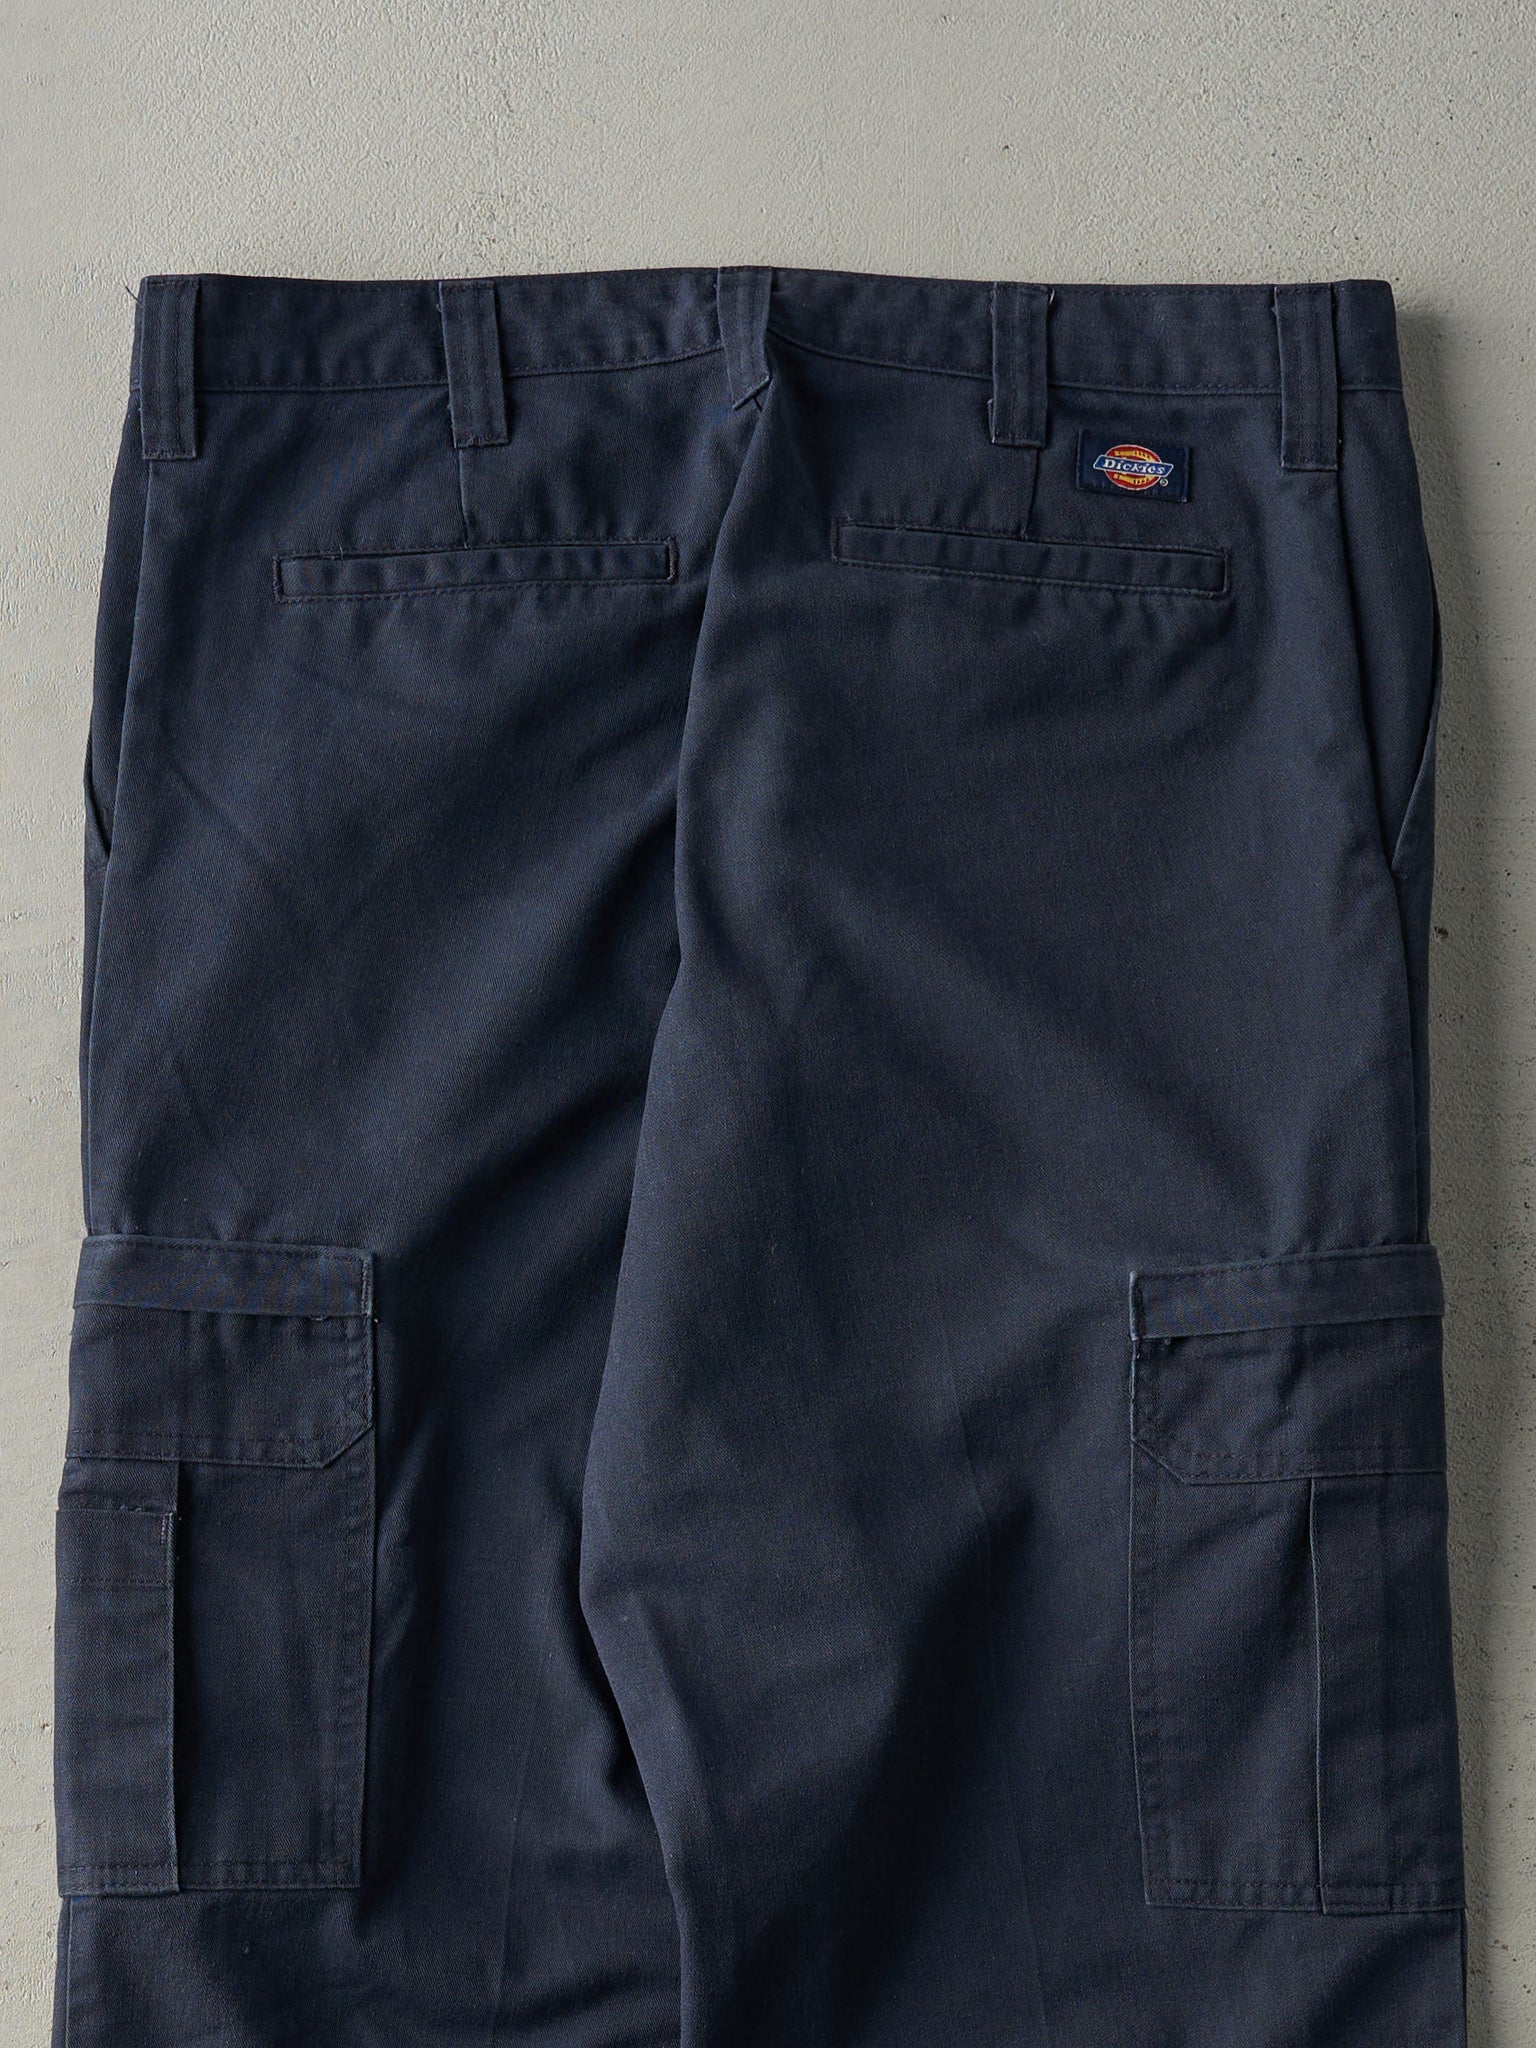 Vintage 90s Navy Blue Dickies Cargo Work Pants (34x29.5)